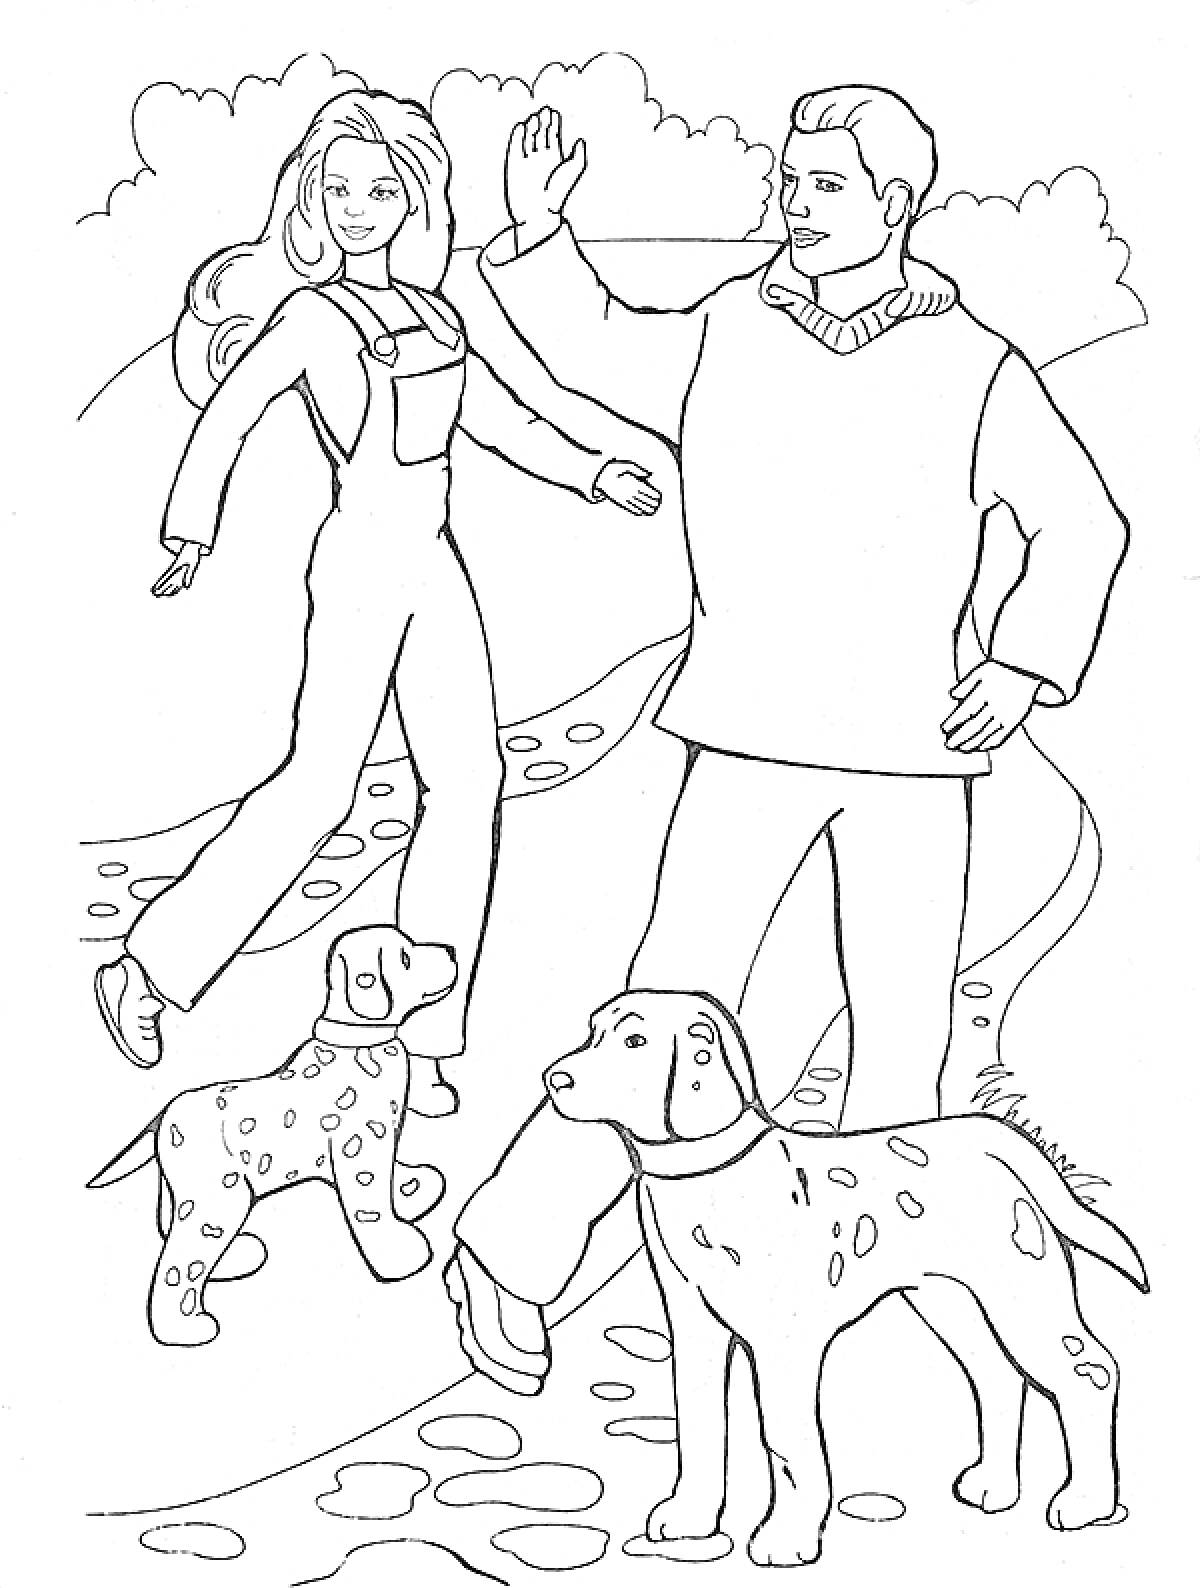  Кен и женщина на прогулке с собаками